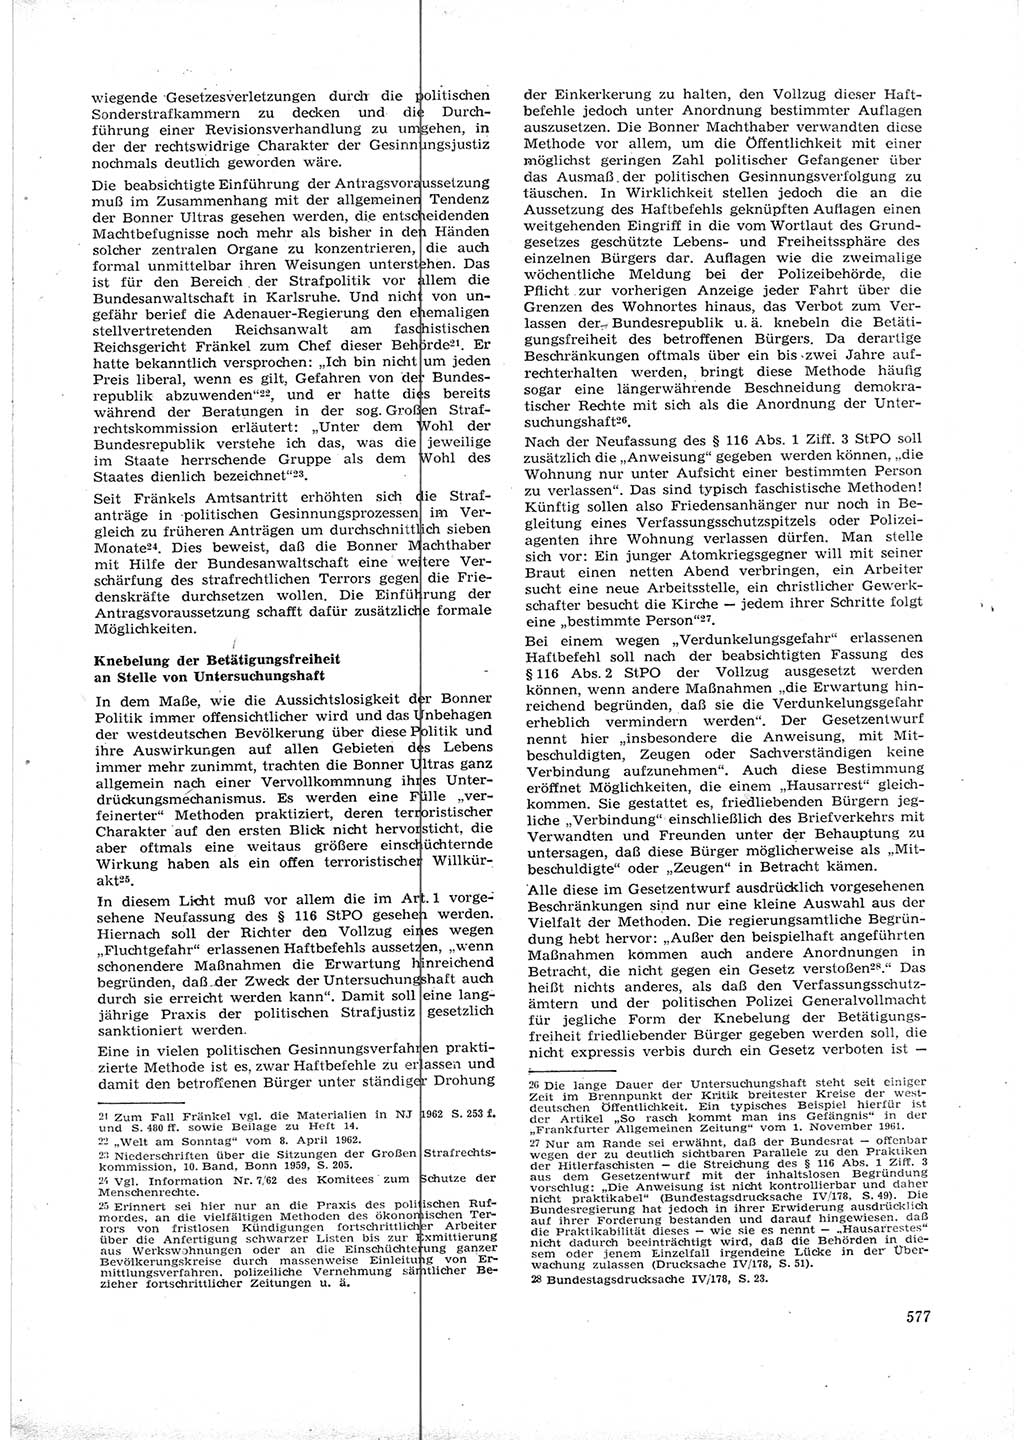 Neue Justiz (NJ), Zeitschrift für Recht und Rechtswissenschaft [Deutsche Demokratische Republik (DDR)], 16. Jahrgang 1962, Seite 577 (NJ DDR 1962, S. 577)